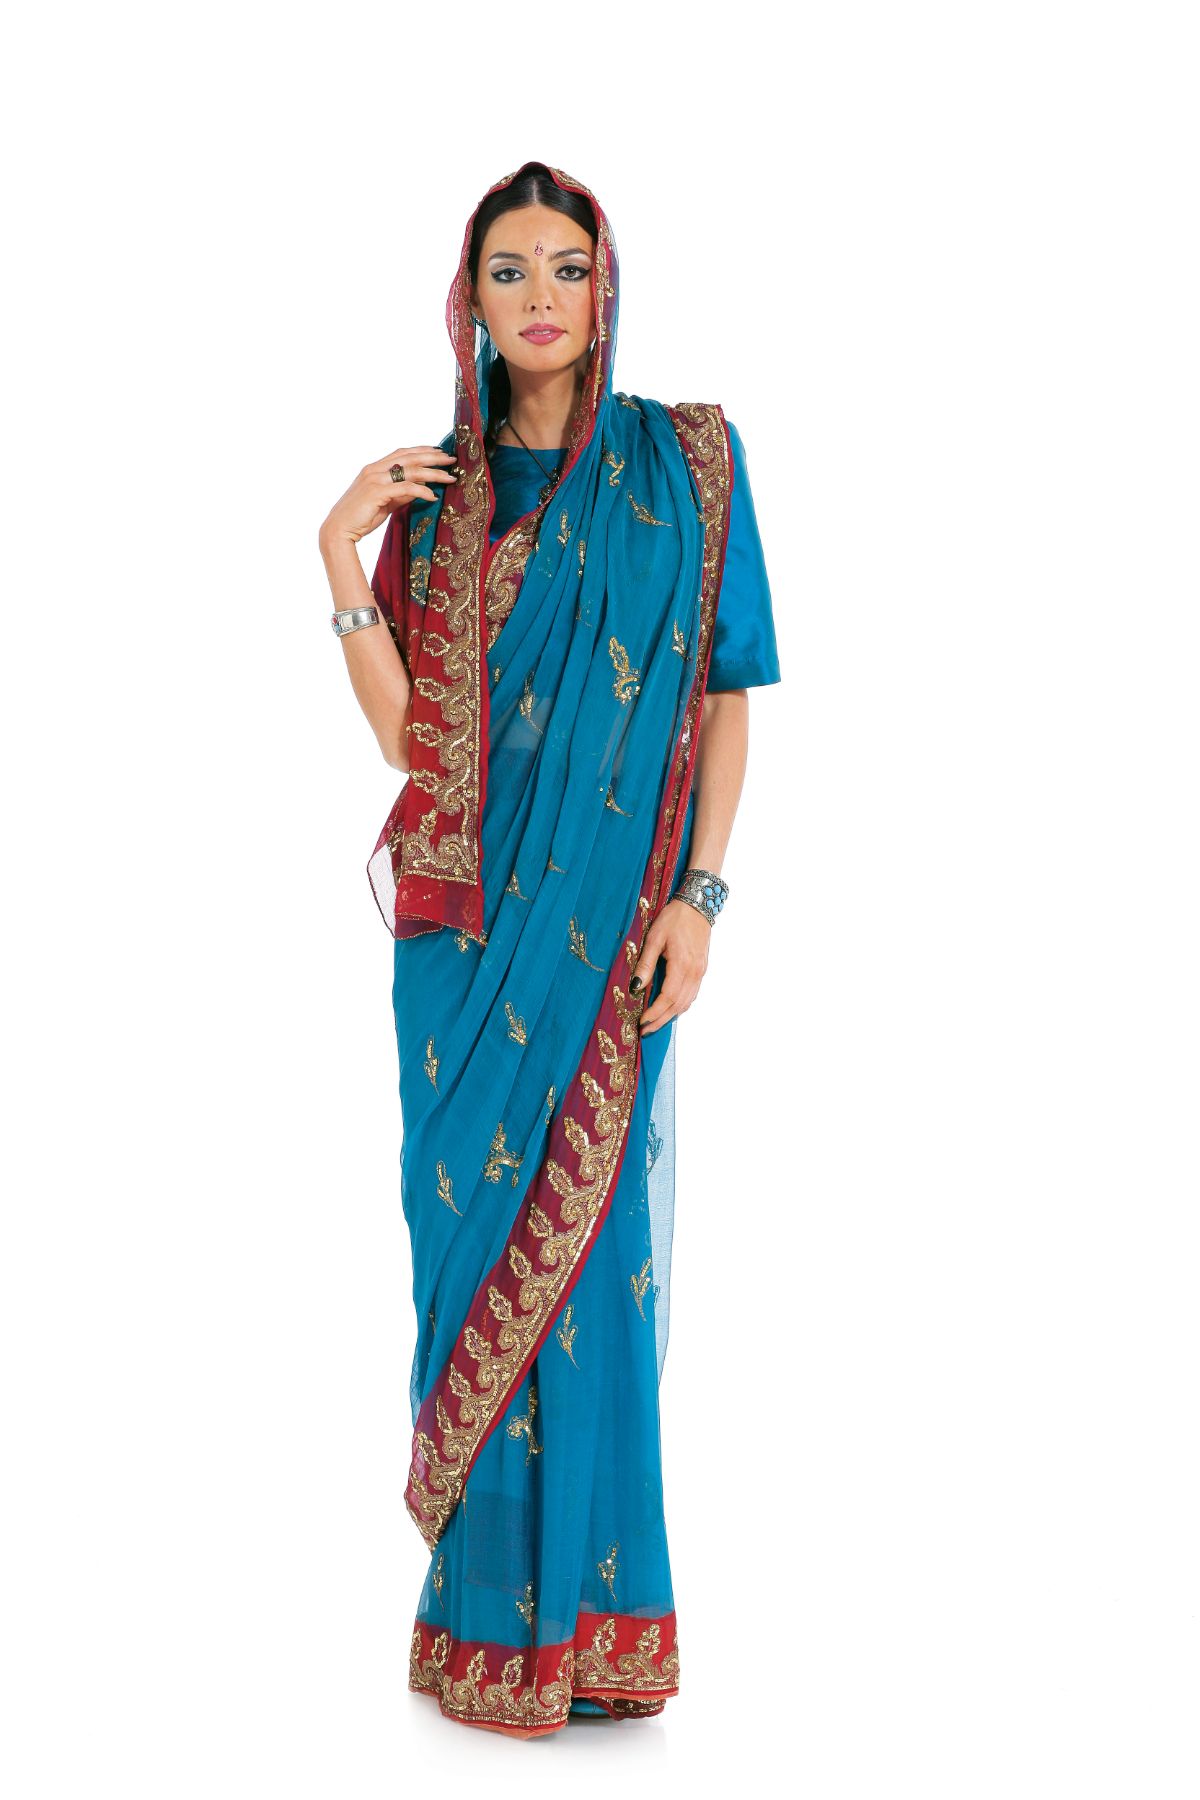 Burda Geel 7701 - Indisch kostuum in variaties